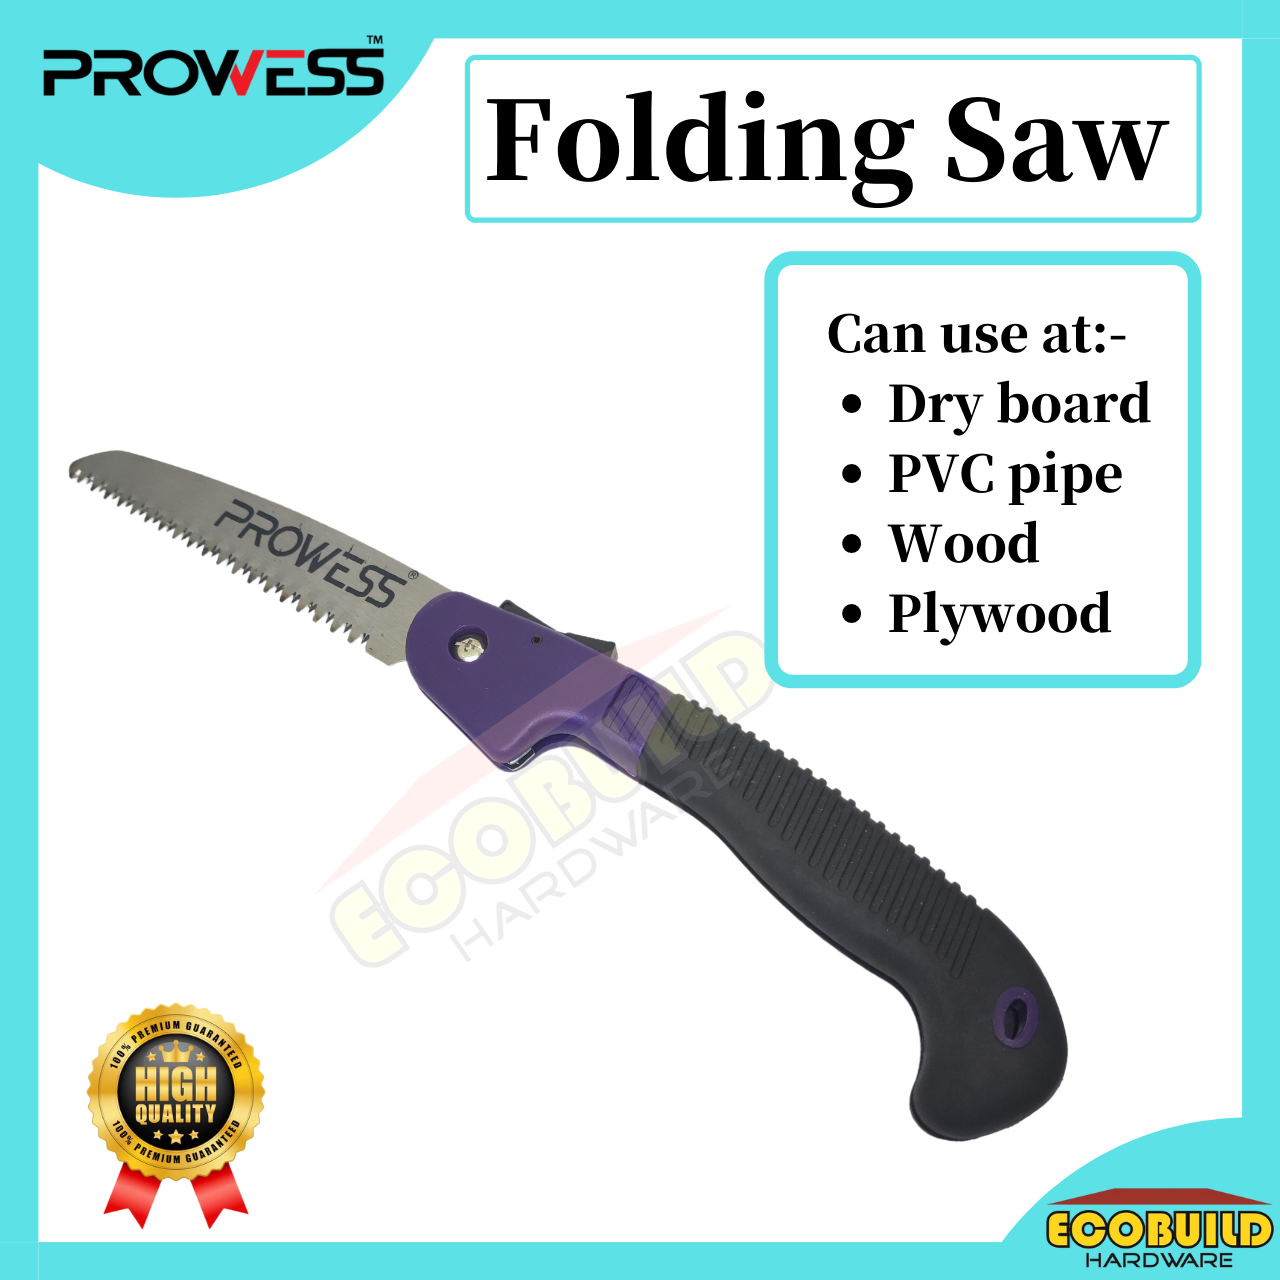 Prowess Folding Saw